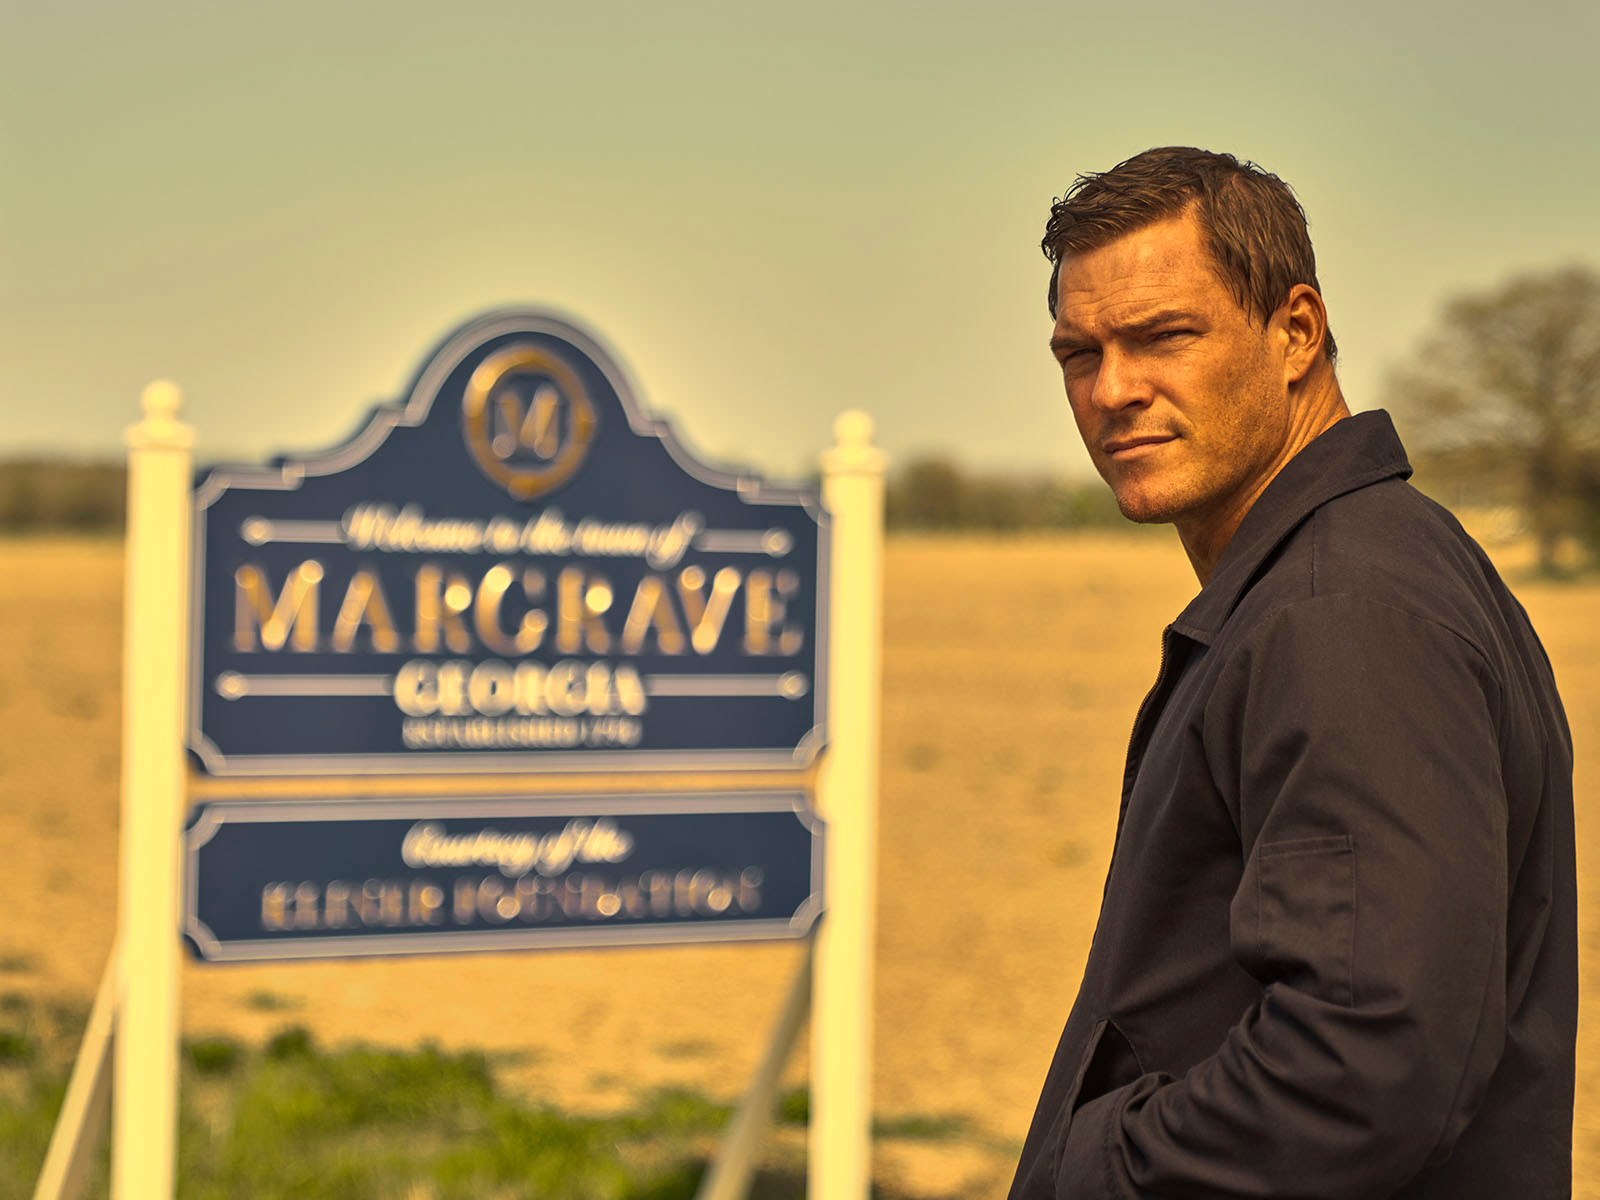 Reacher: Welcome to Margrave | Season 1 | Episode 1